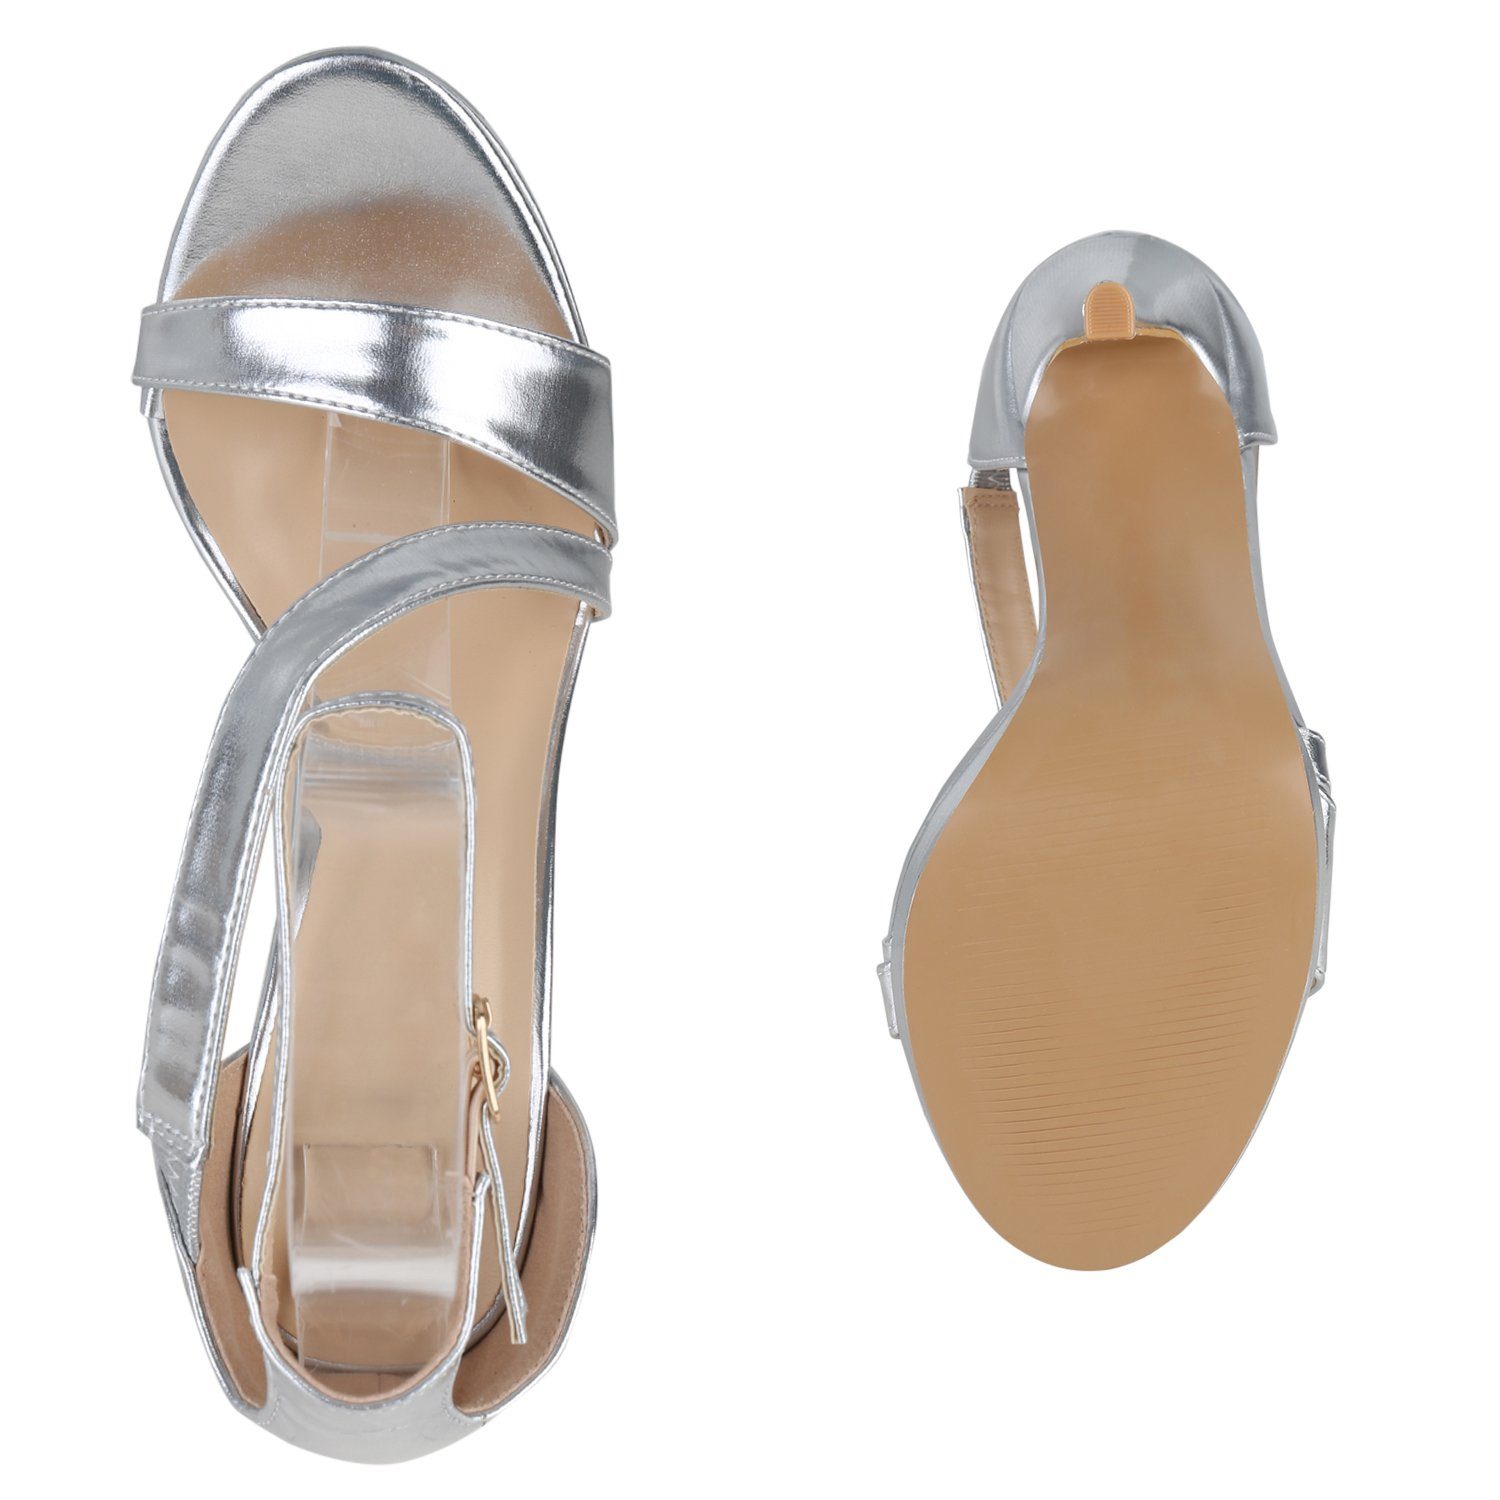 840096 HILL Silber High-Heel-Sandalette Schuhe Bequeme VAN